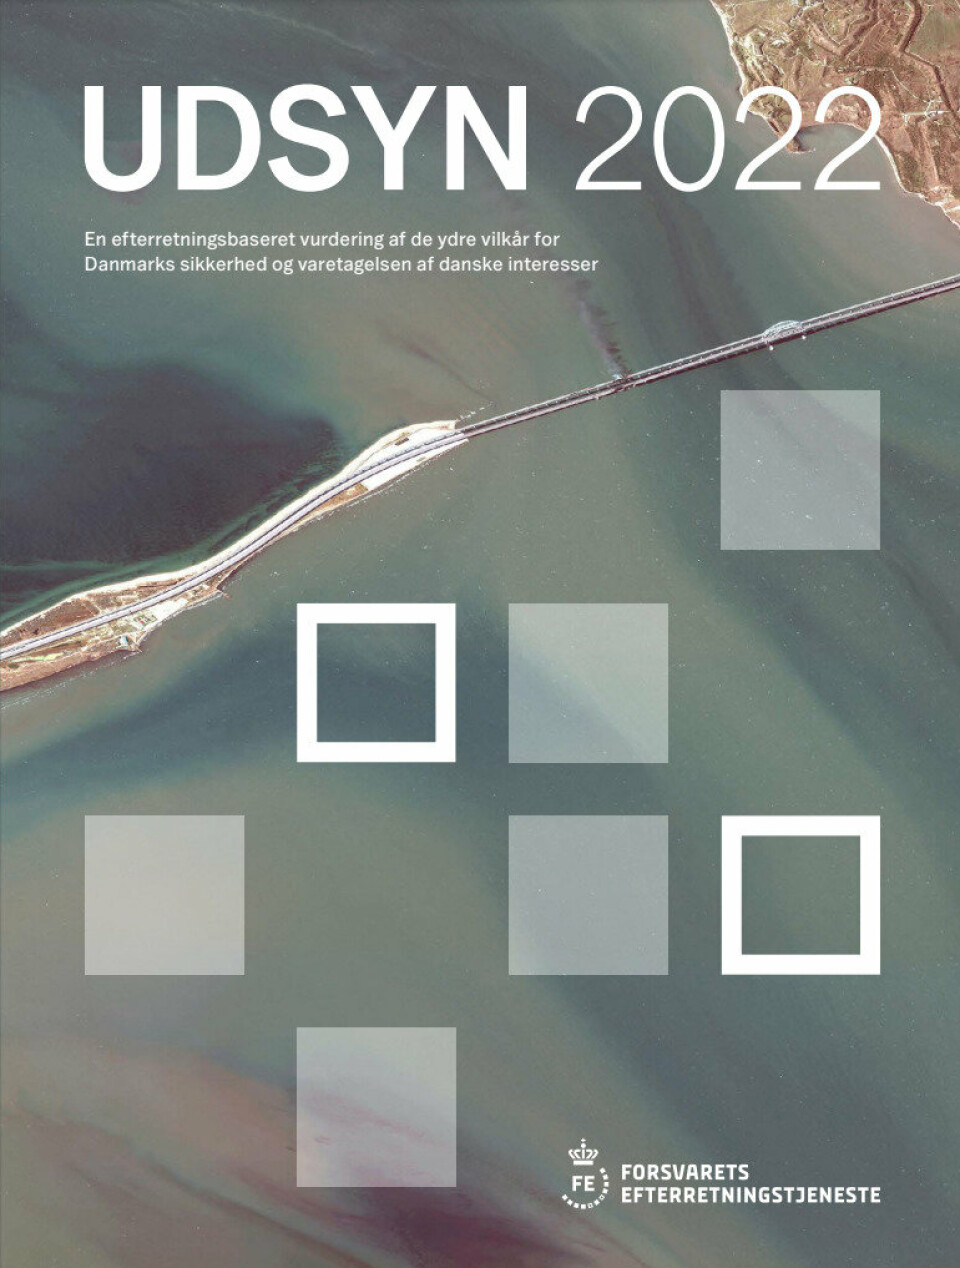 UDSYN 2022: Den danske militære etterretningstjenestens åpne trusselvurdering ble publisert før jul.